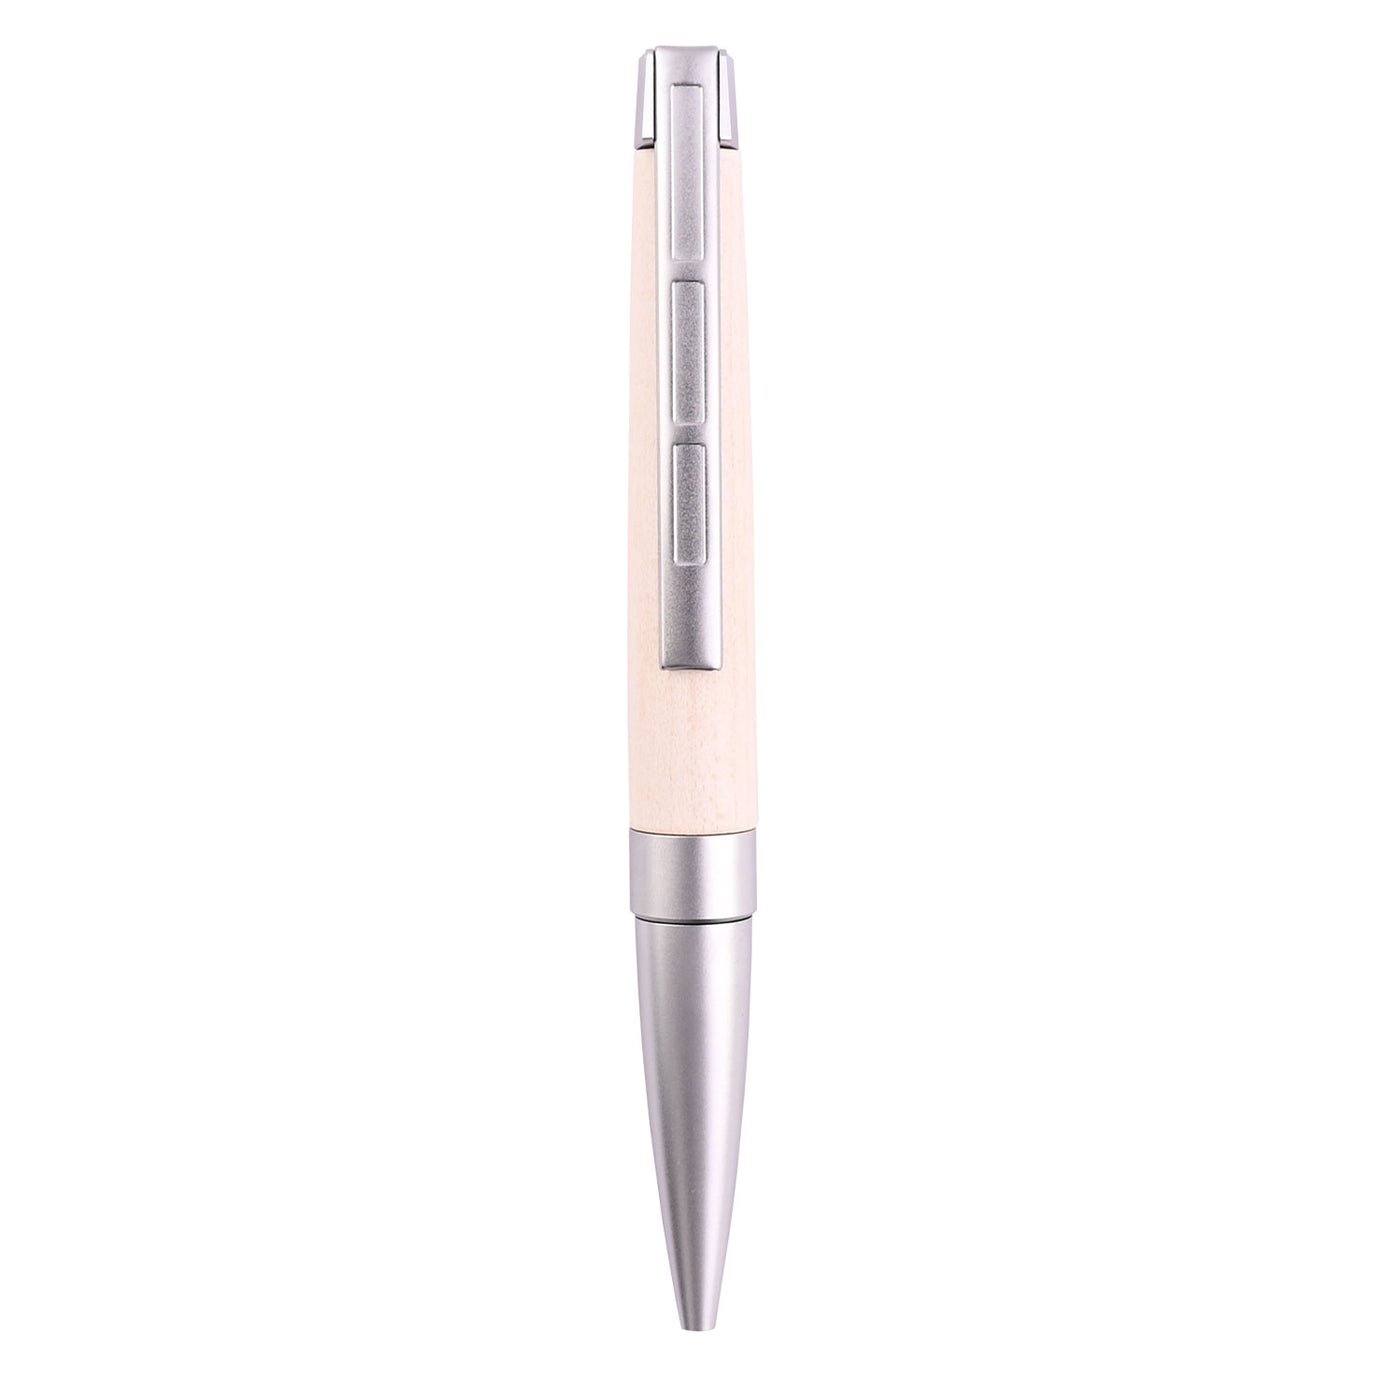 Staedtler Premium Lignum Ball Pen - Maple Wood CT 4